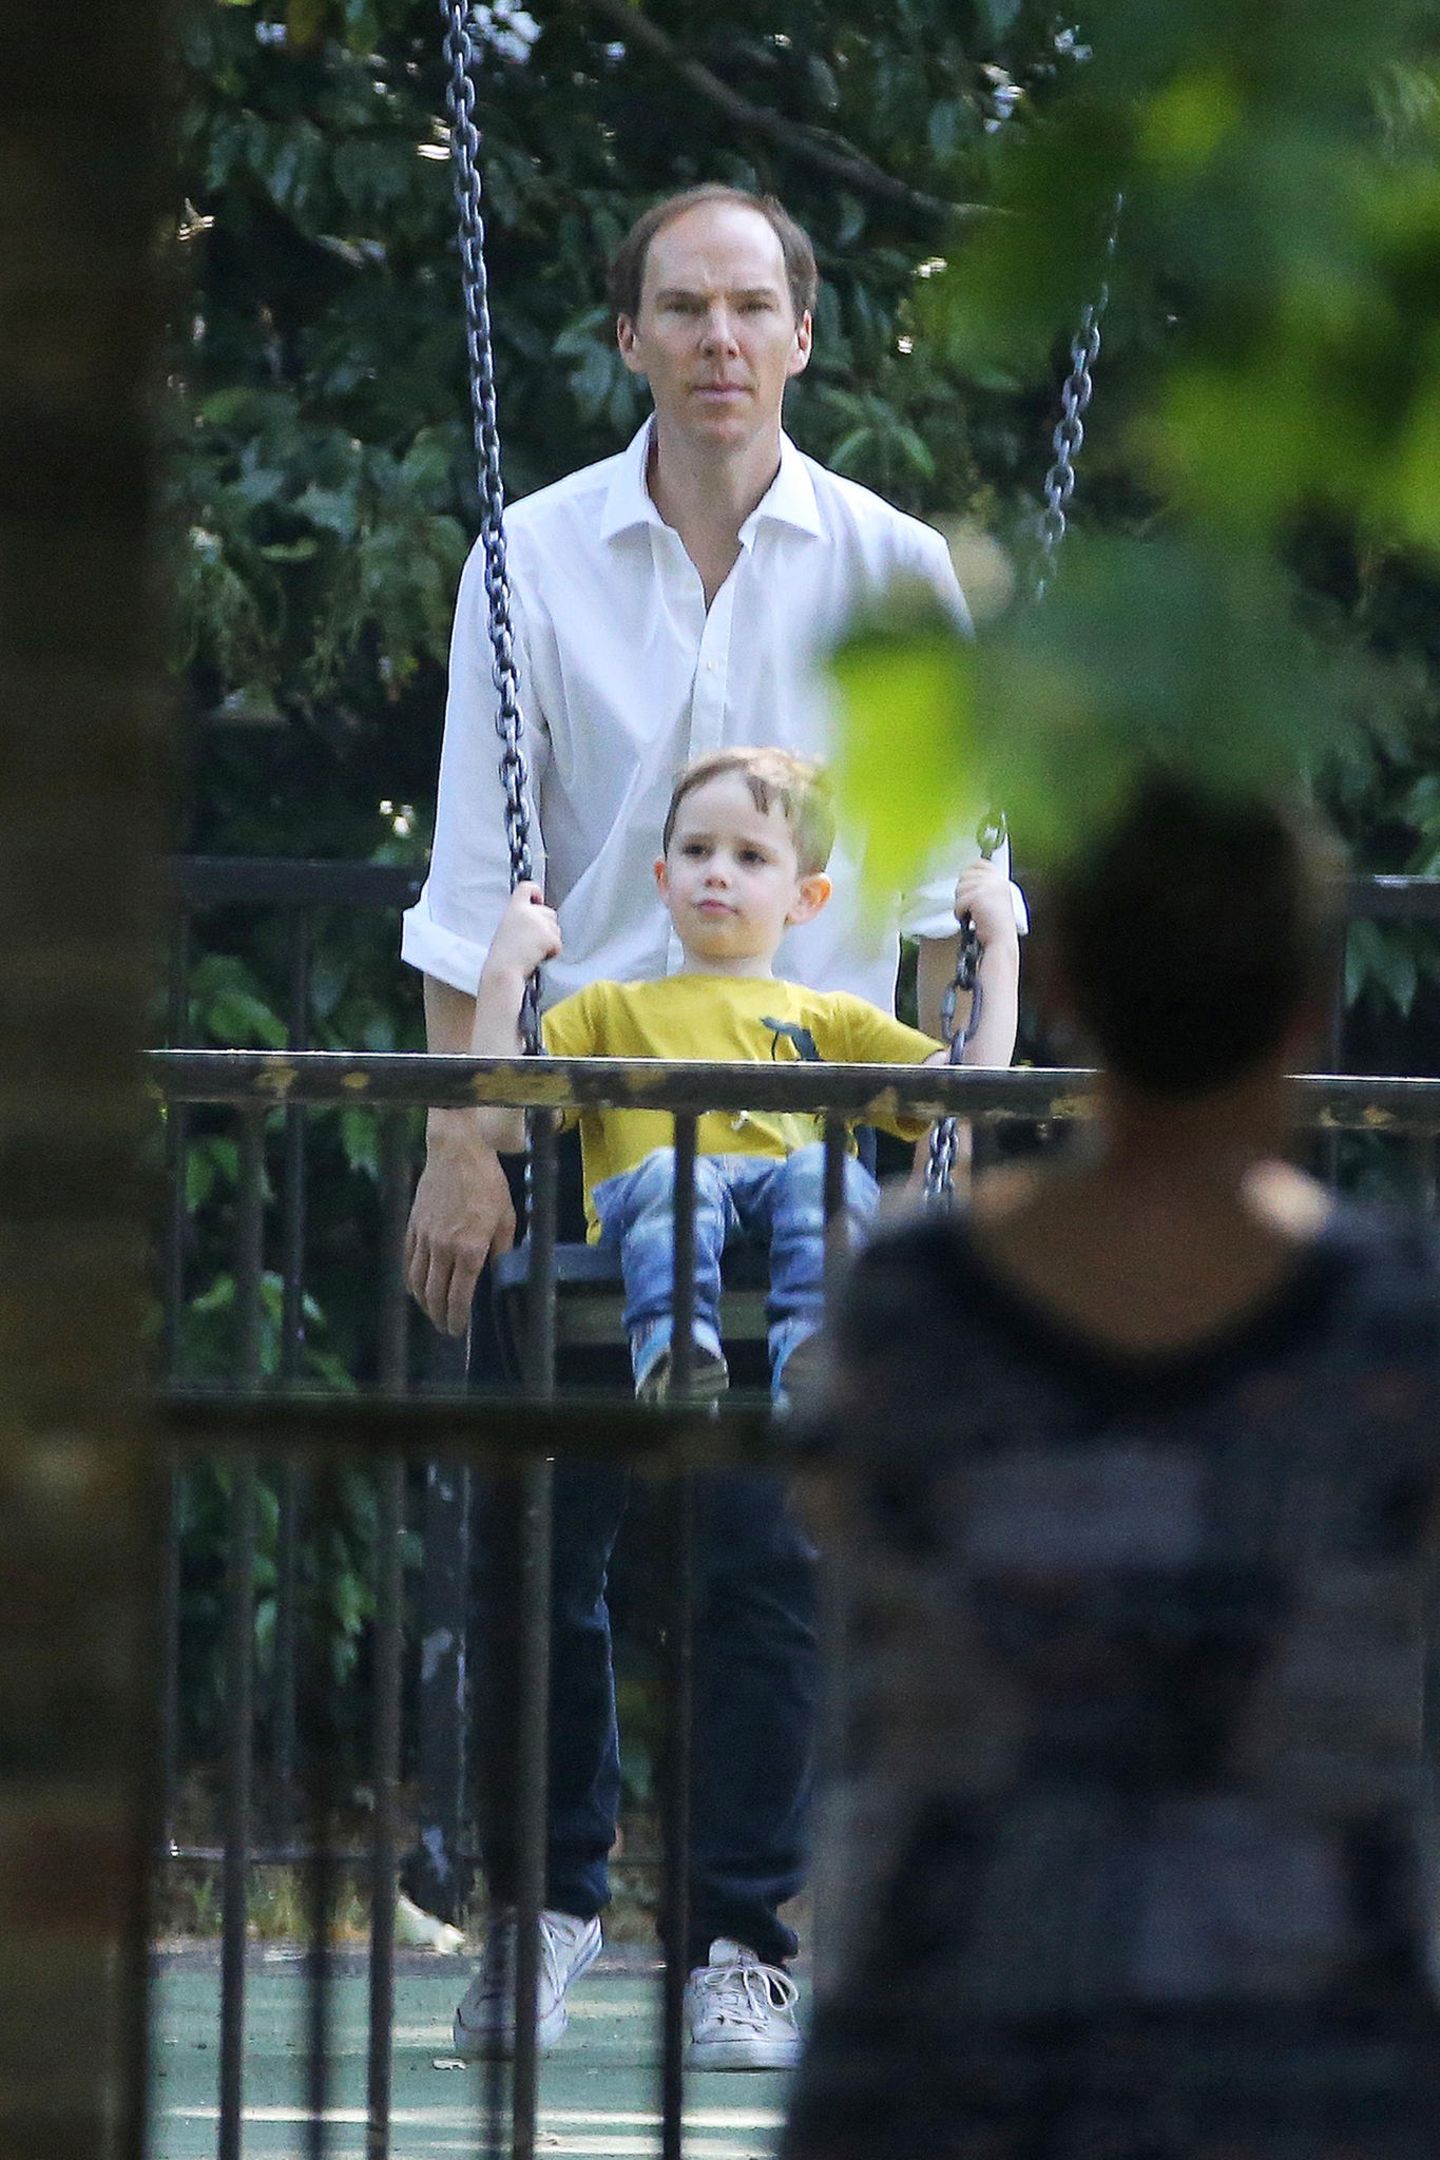 Ist jetzt Schluss mit den "SherLocken"? Die neuesten Fotos von "Sherlock"-Star Benedict Cumberbutch sind für seine vielen Fans sicherlich ein Schock, trägt er doch auf seinem schlauen Kopf ganz deutlich weniger Haare. Aber keine Sorge ...